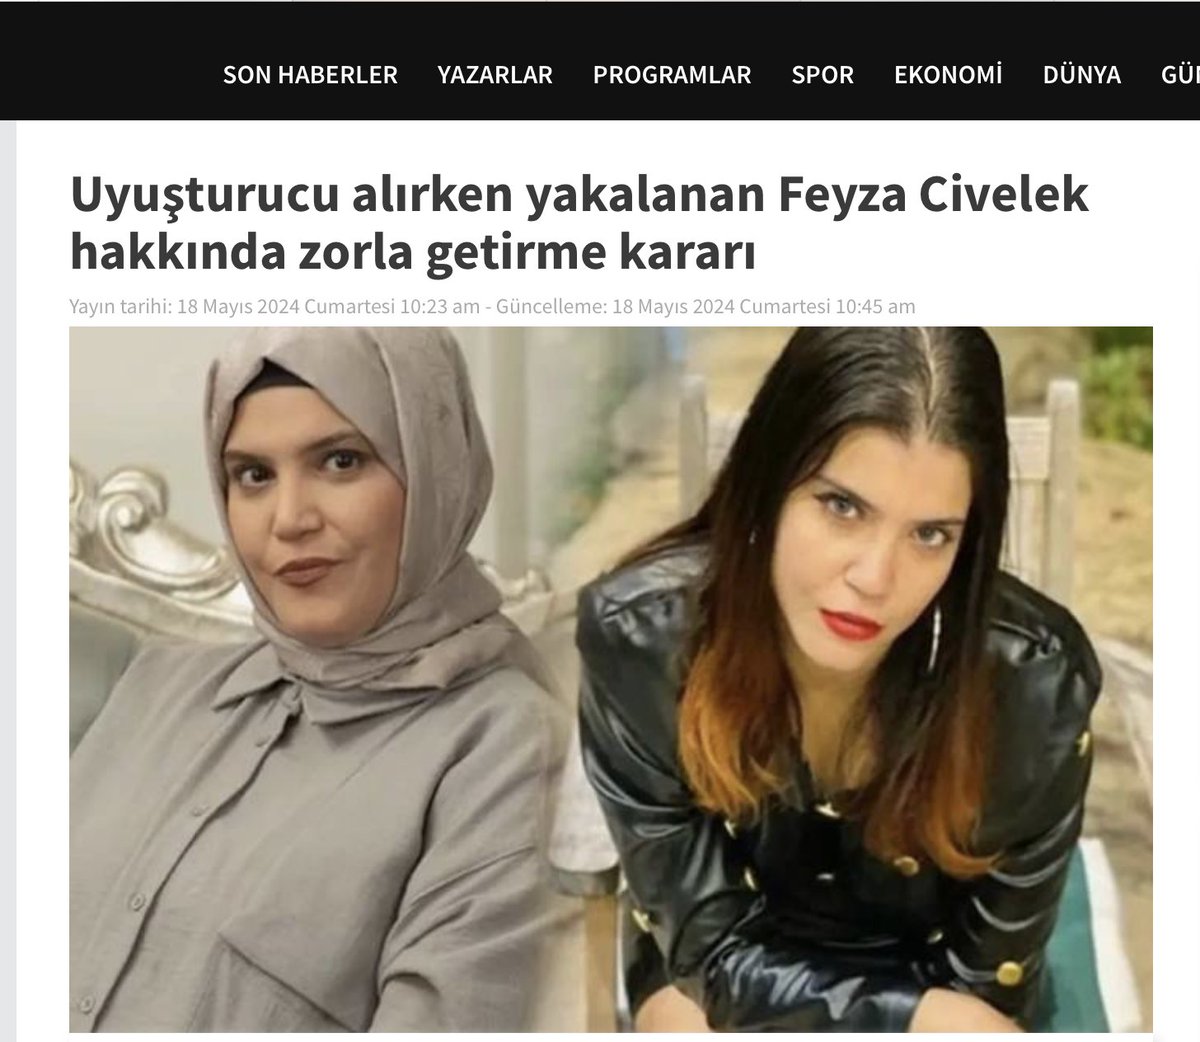 Uyuşturucu alırken yakalanan Feyza Civelek hakkında zorla getirme kararı... tele1.com.tr/uyusturucu-ali…